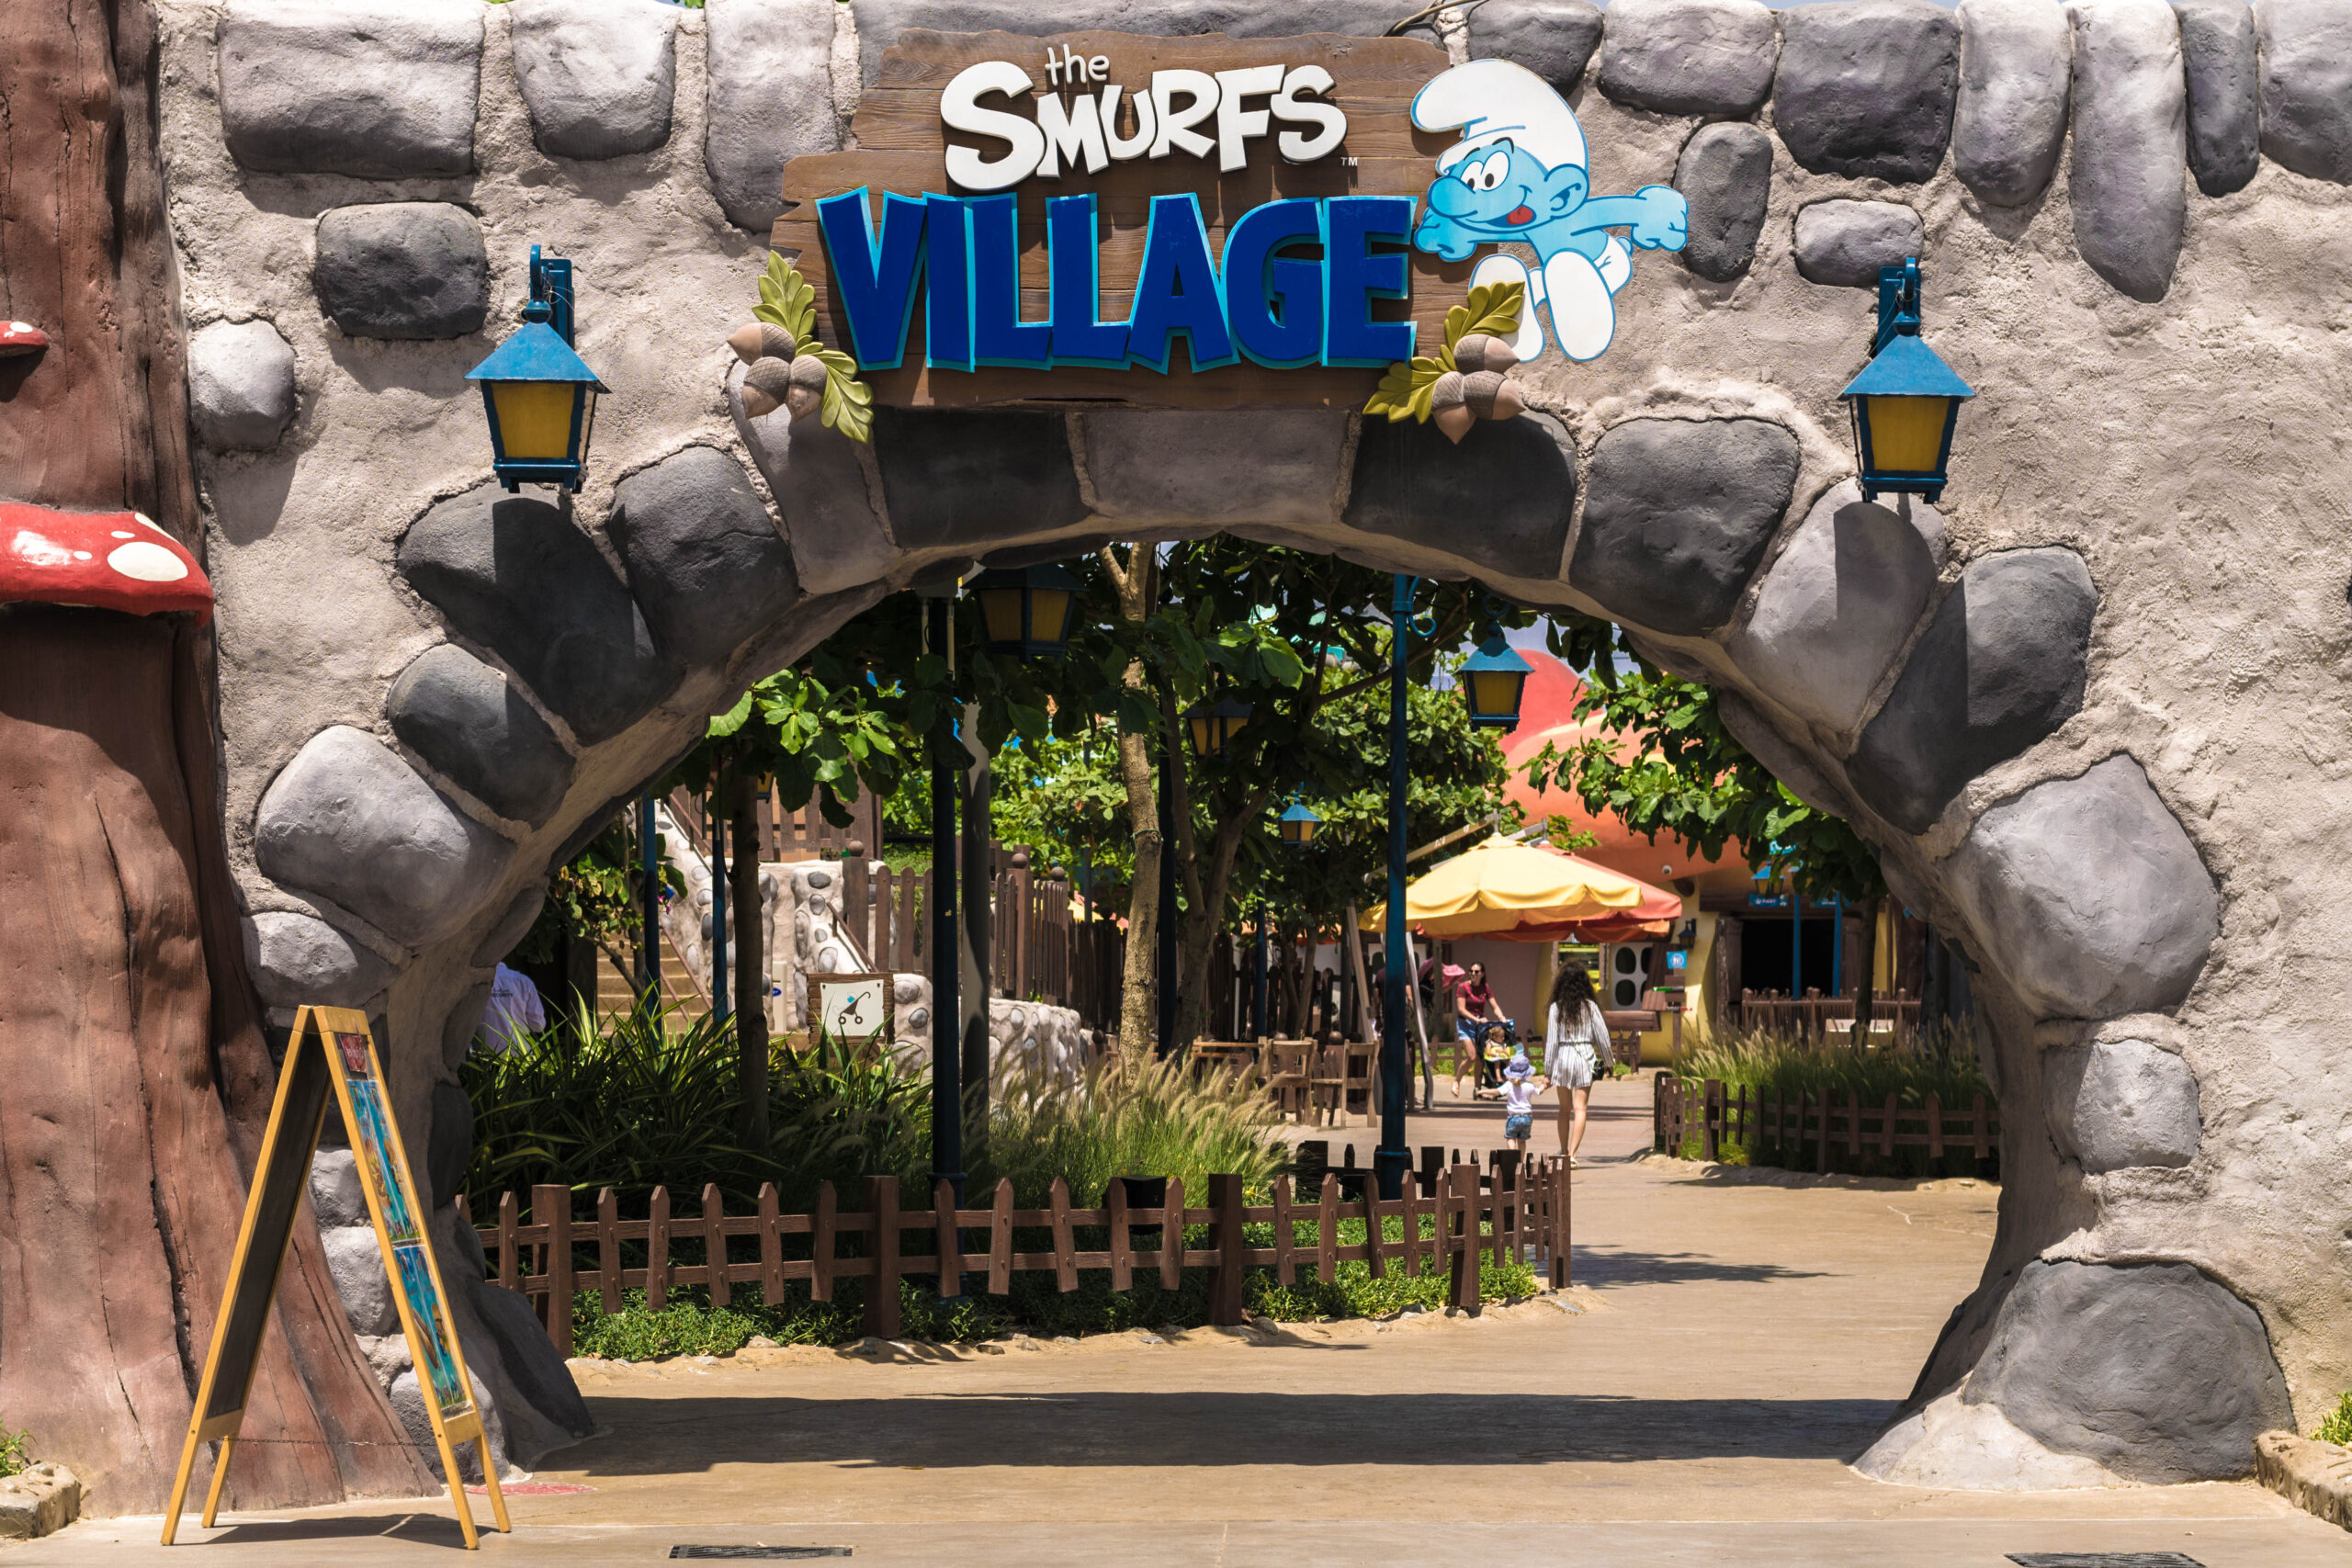 Motiongate Dubai Theme Park - The Smurfs Village